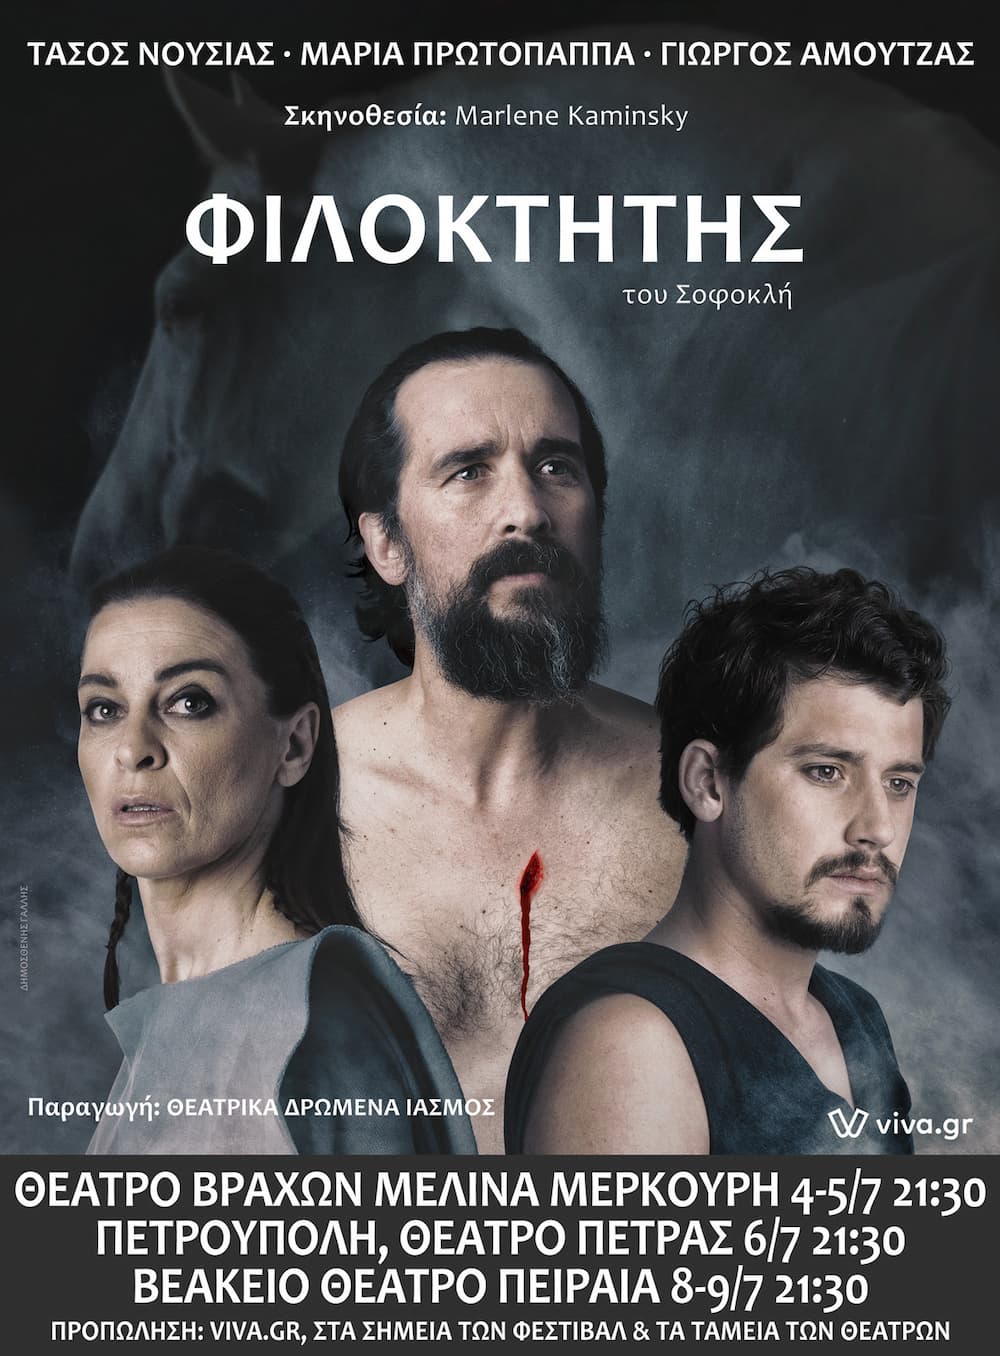 Filoktitis 30 6 22 - «Φιλοκτήτης»: Η πρεμιέρα στην Αθήνα στις 4 και Τρίτη 5 Ιουλίου στο Θέατρο Βράχων (εικόνες & βίντεο)